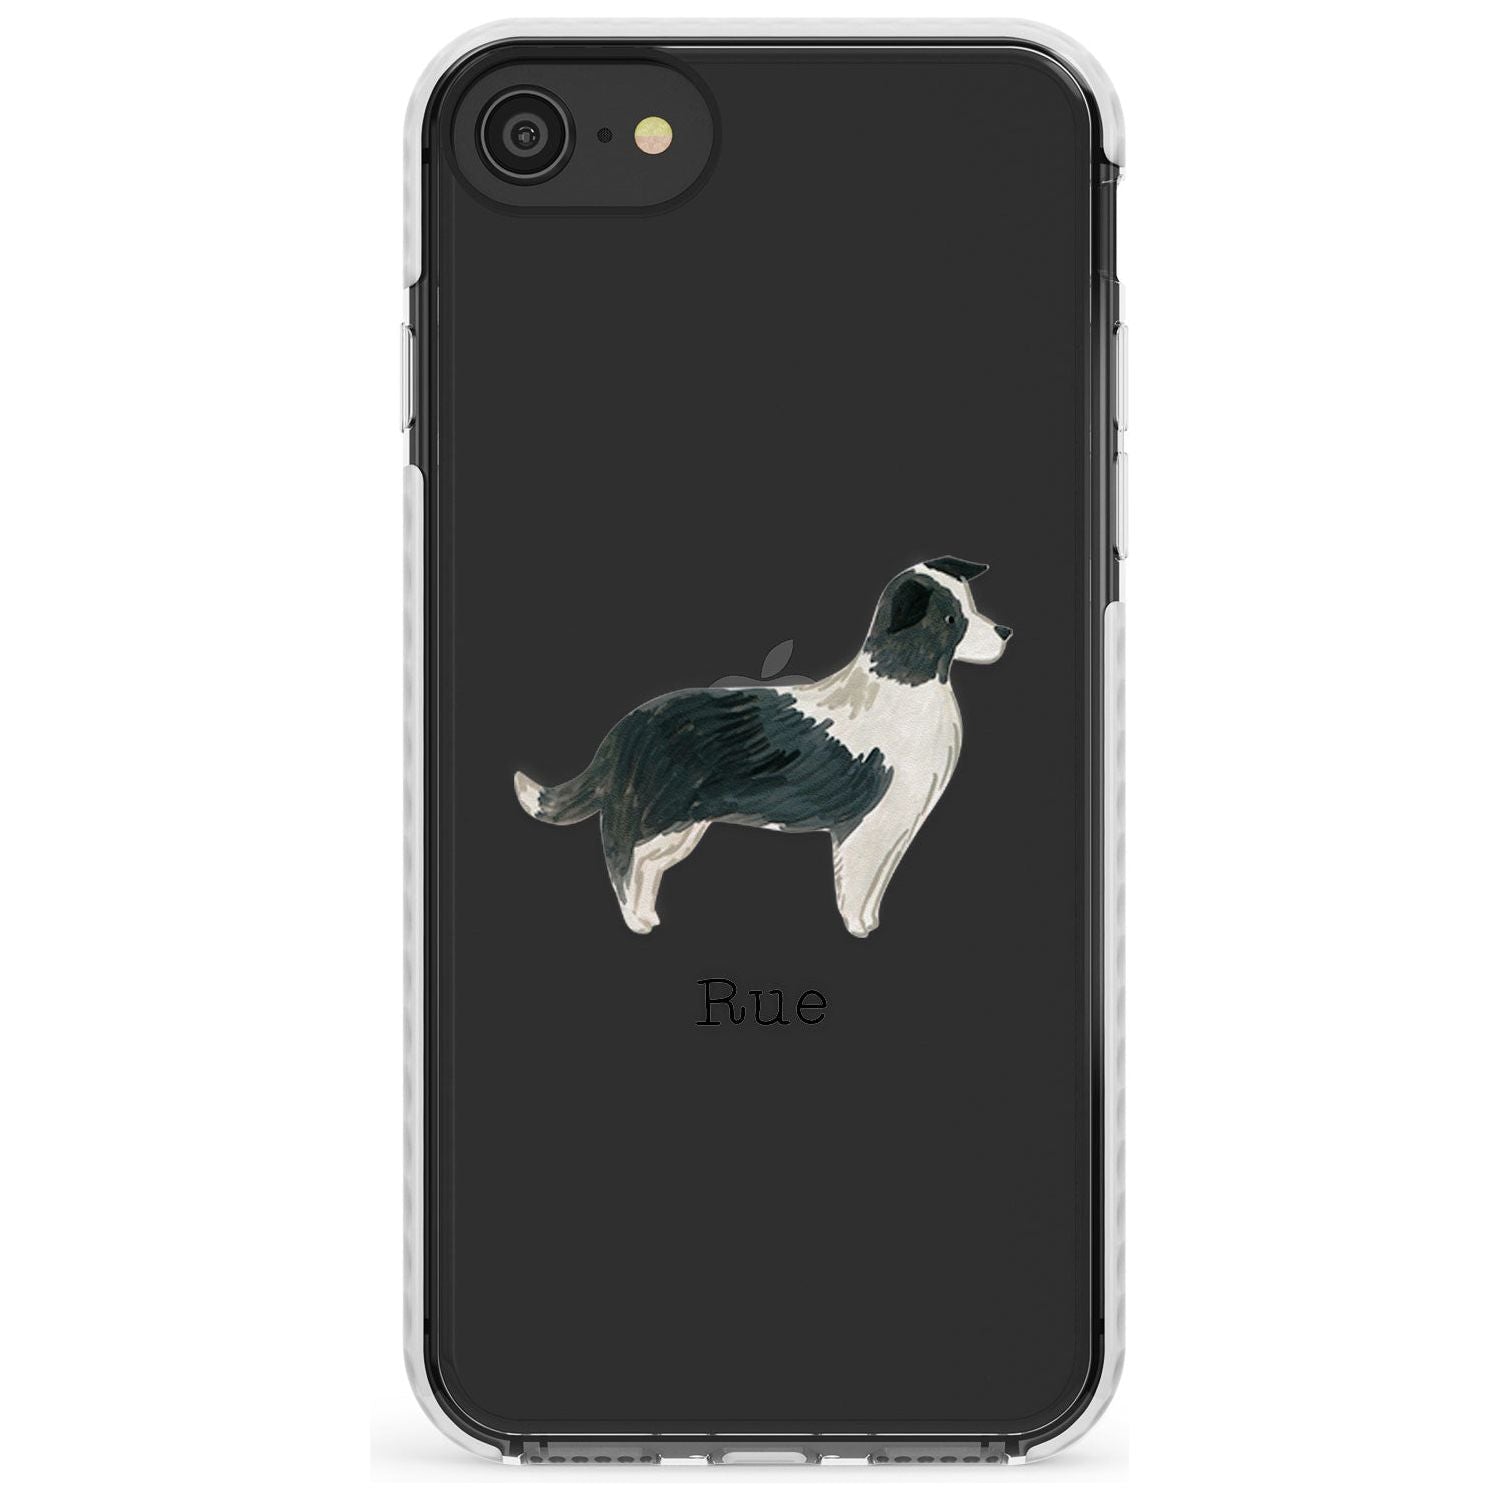 Border Collie Slim TPU Phone Case for iPhone SE 8 7 Plus